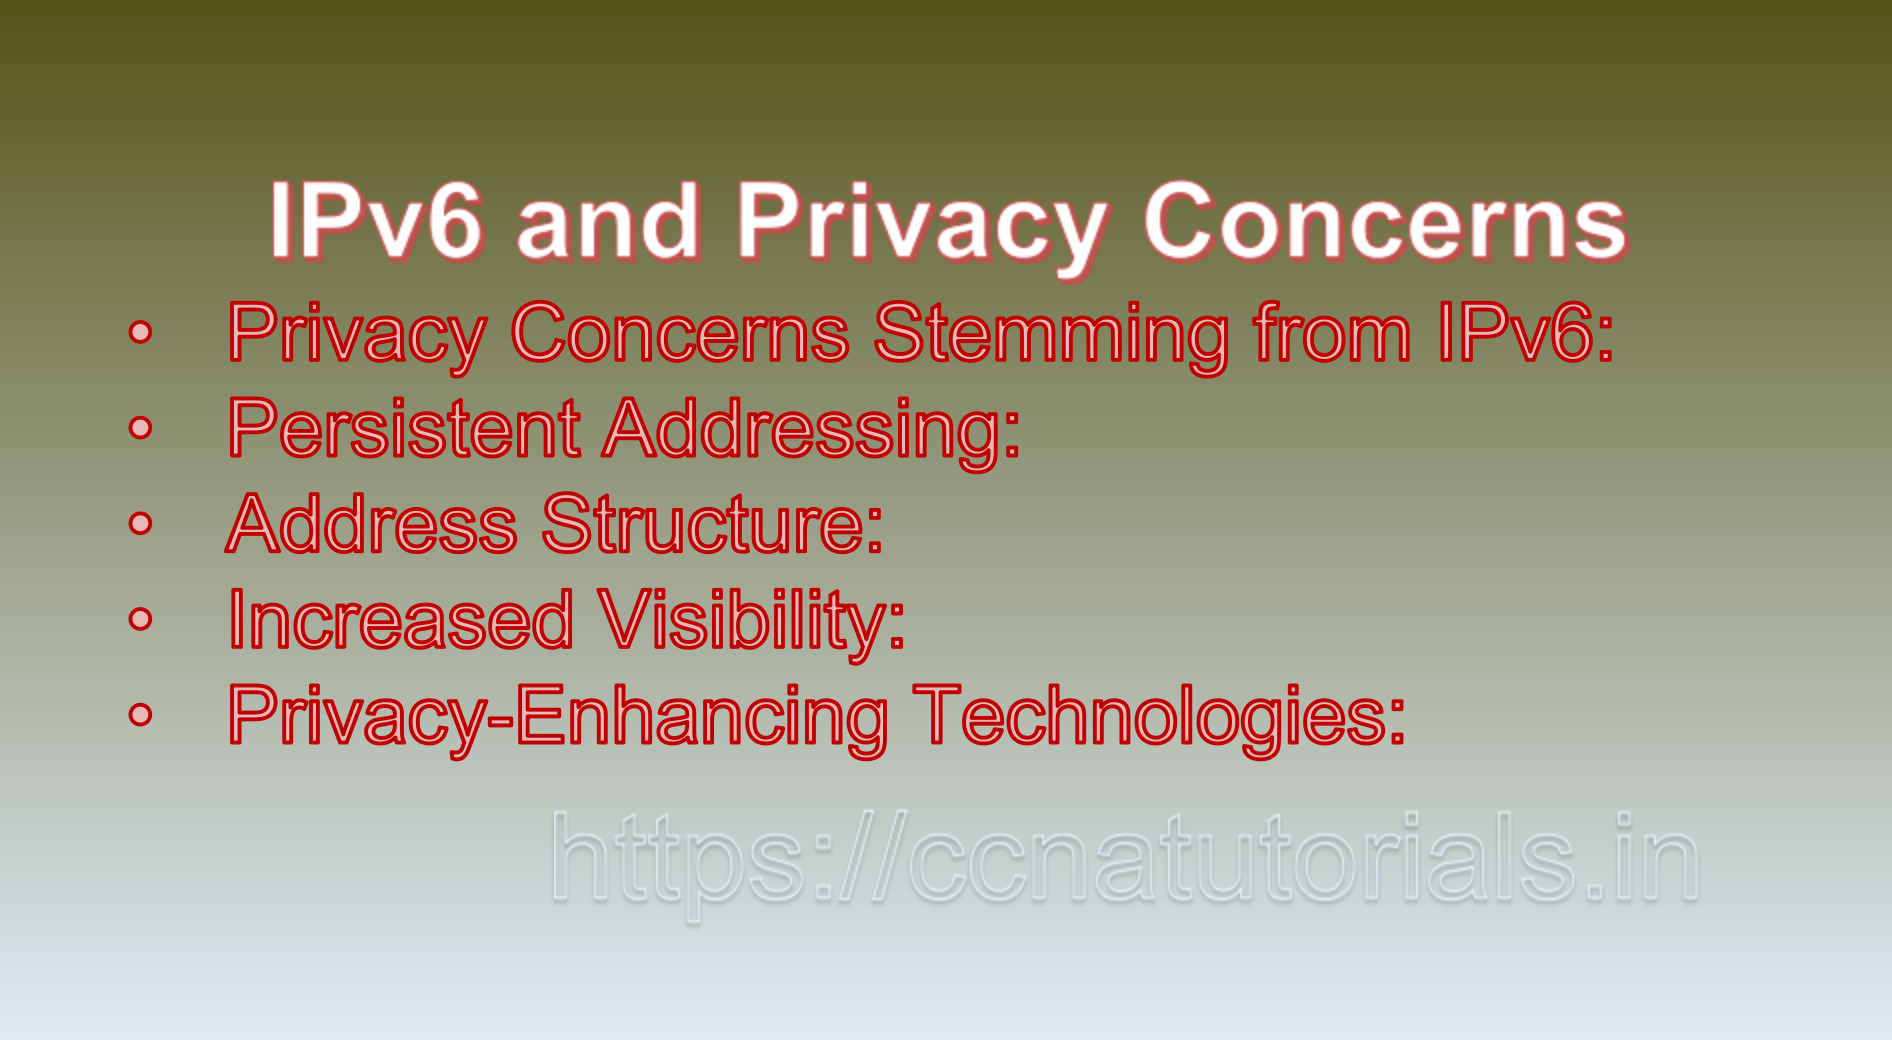 IPv6 and Privacy Concerns, CCNA, CCNA TUTORIALS